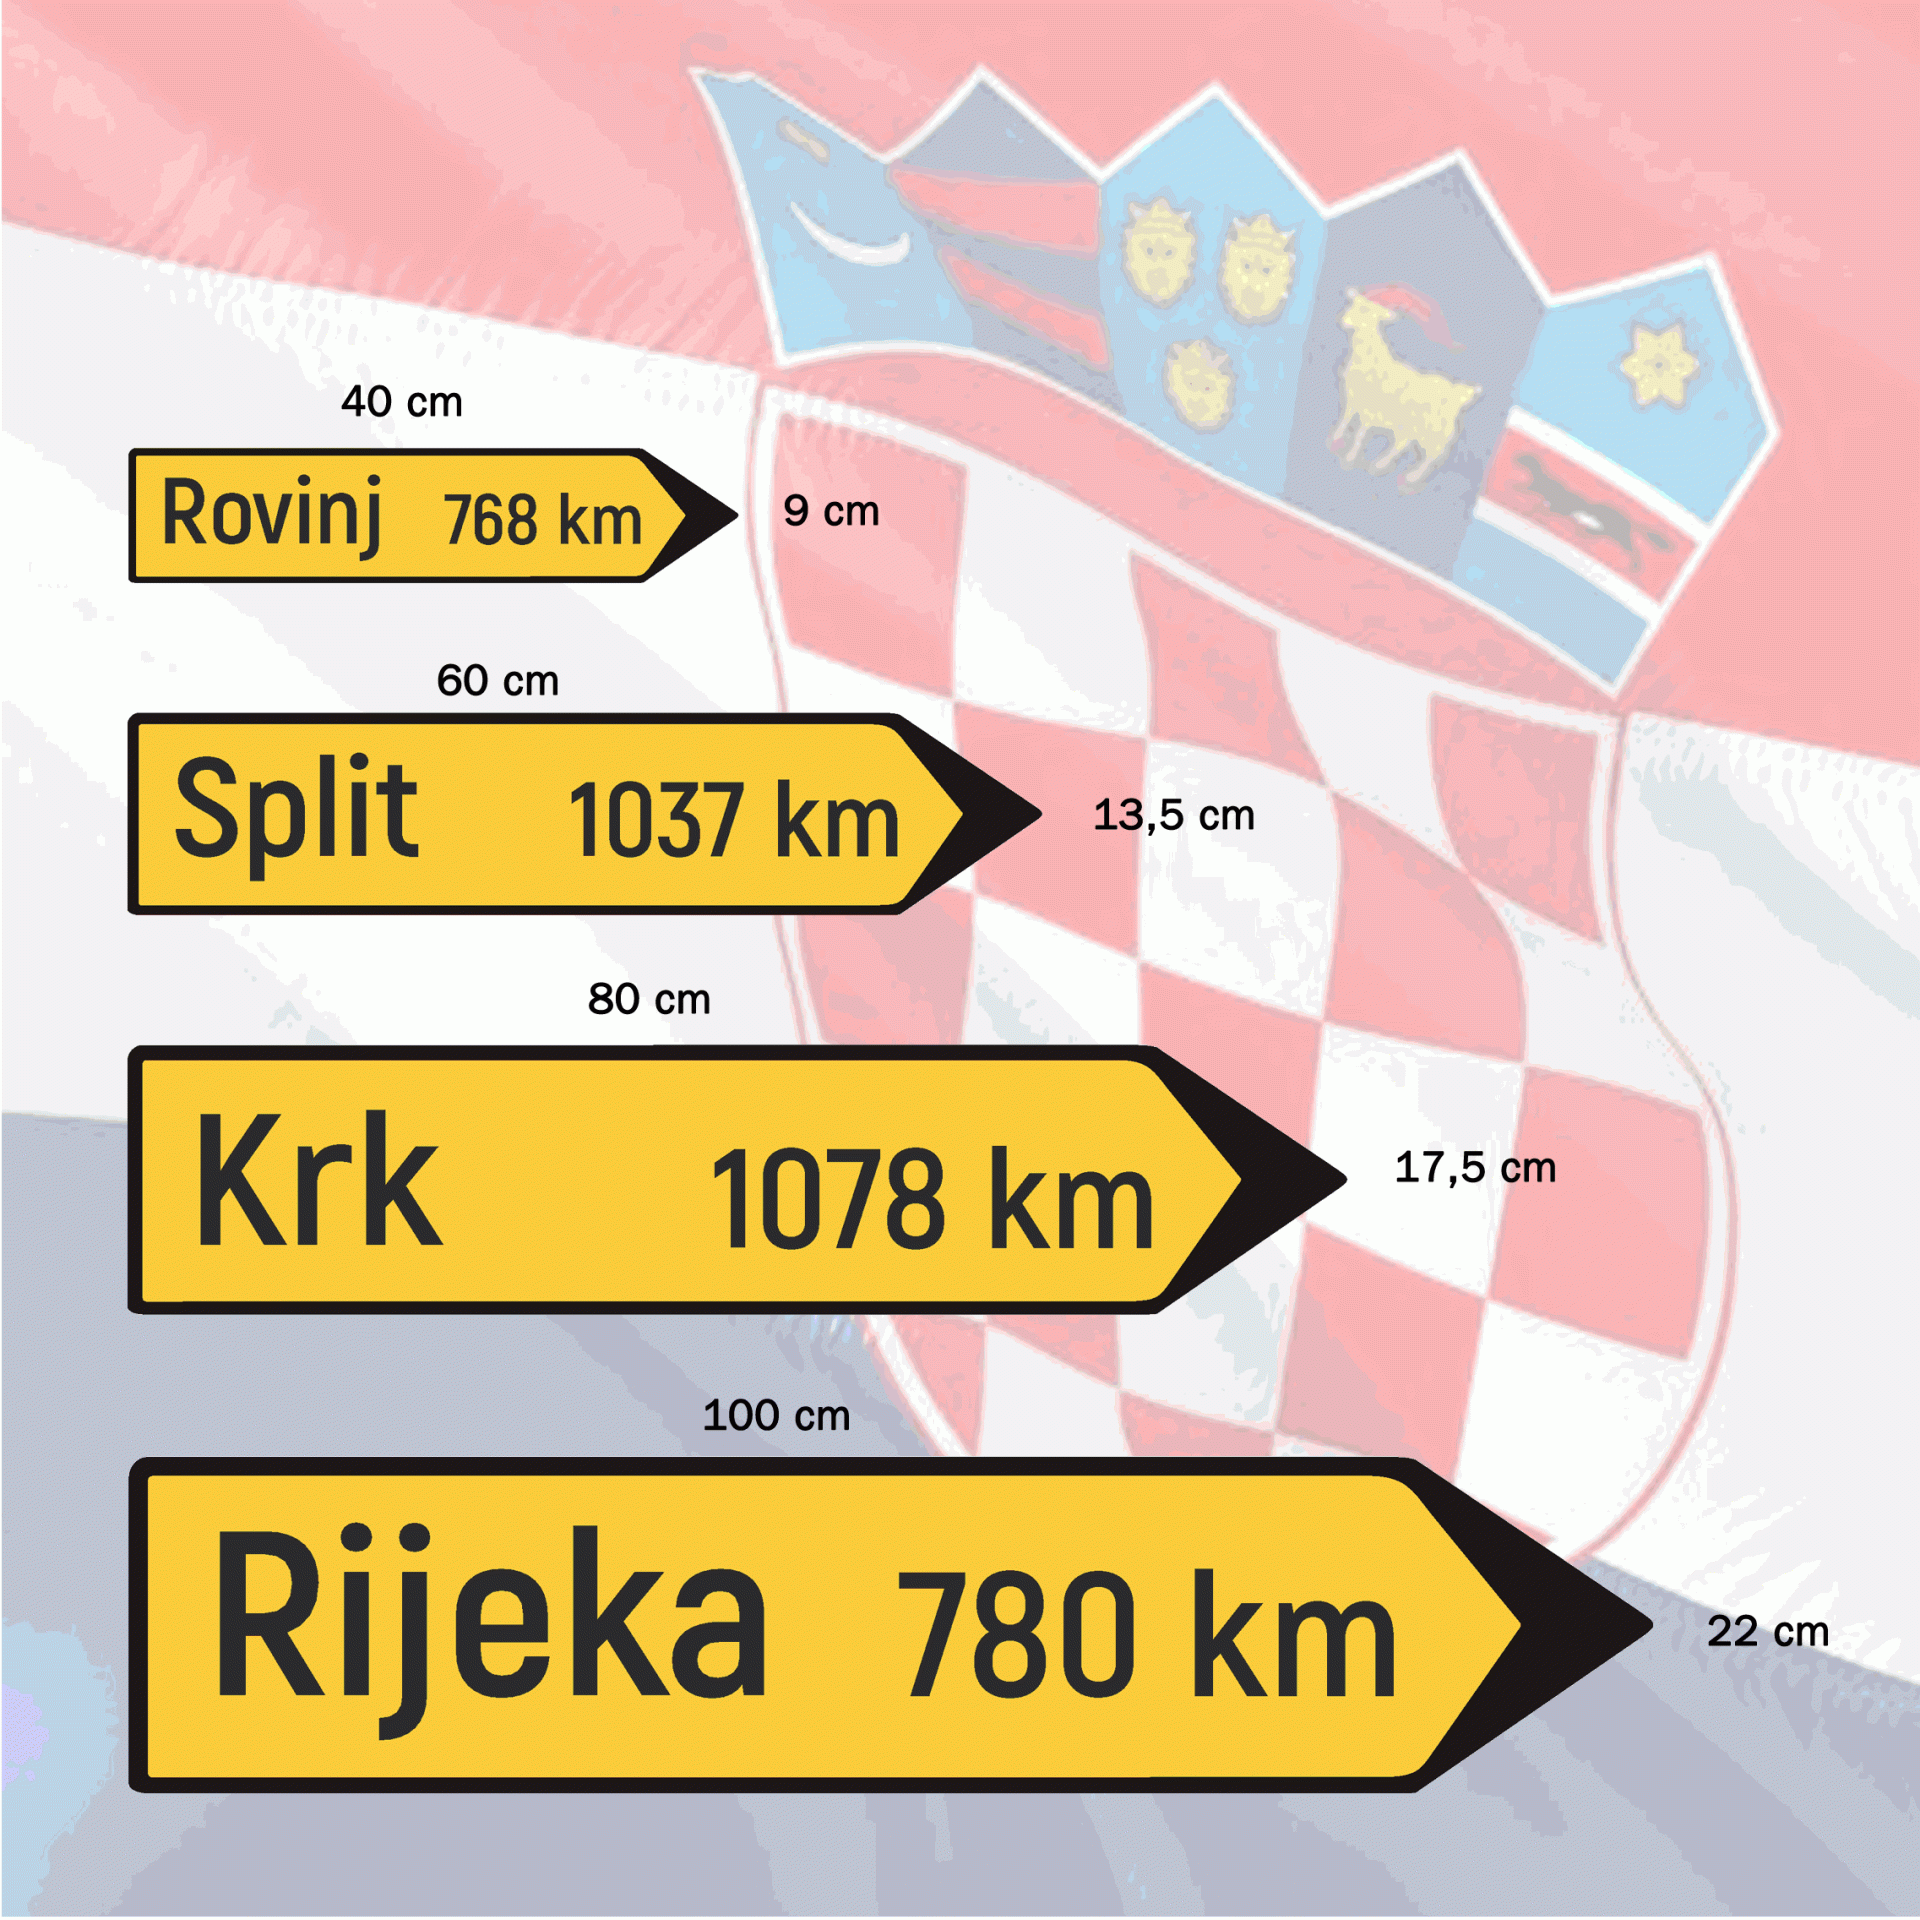 Richtungspfeil "Kroatien/Croatia" 